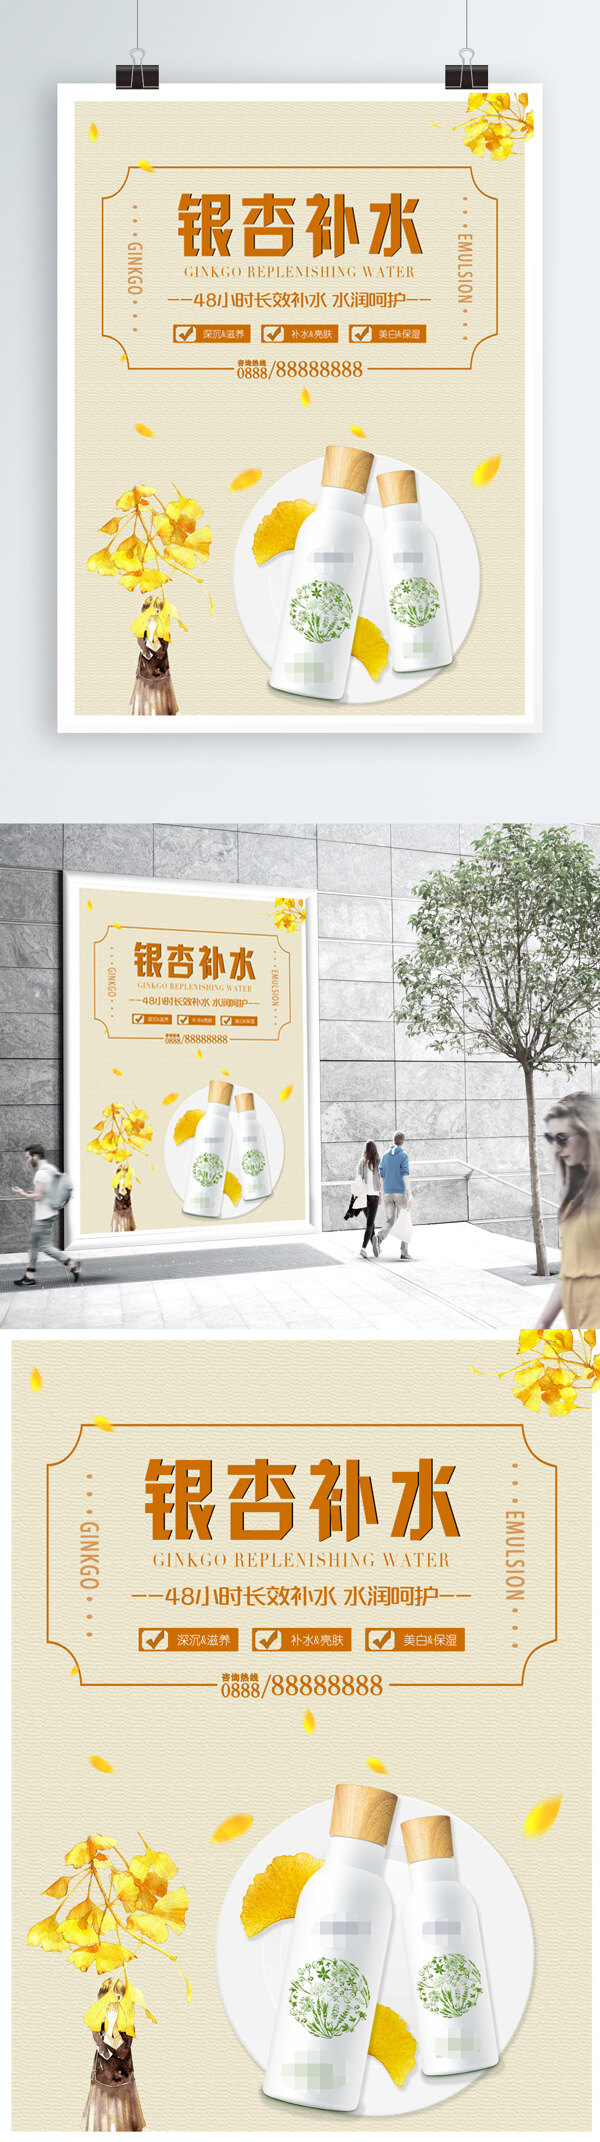 黄色清新补水系列护肤品促销宣传海报